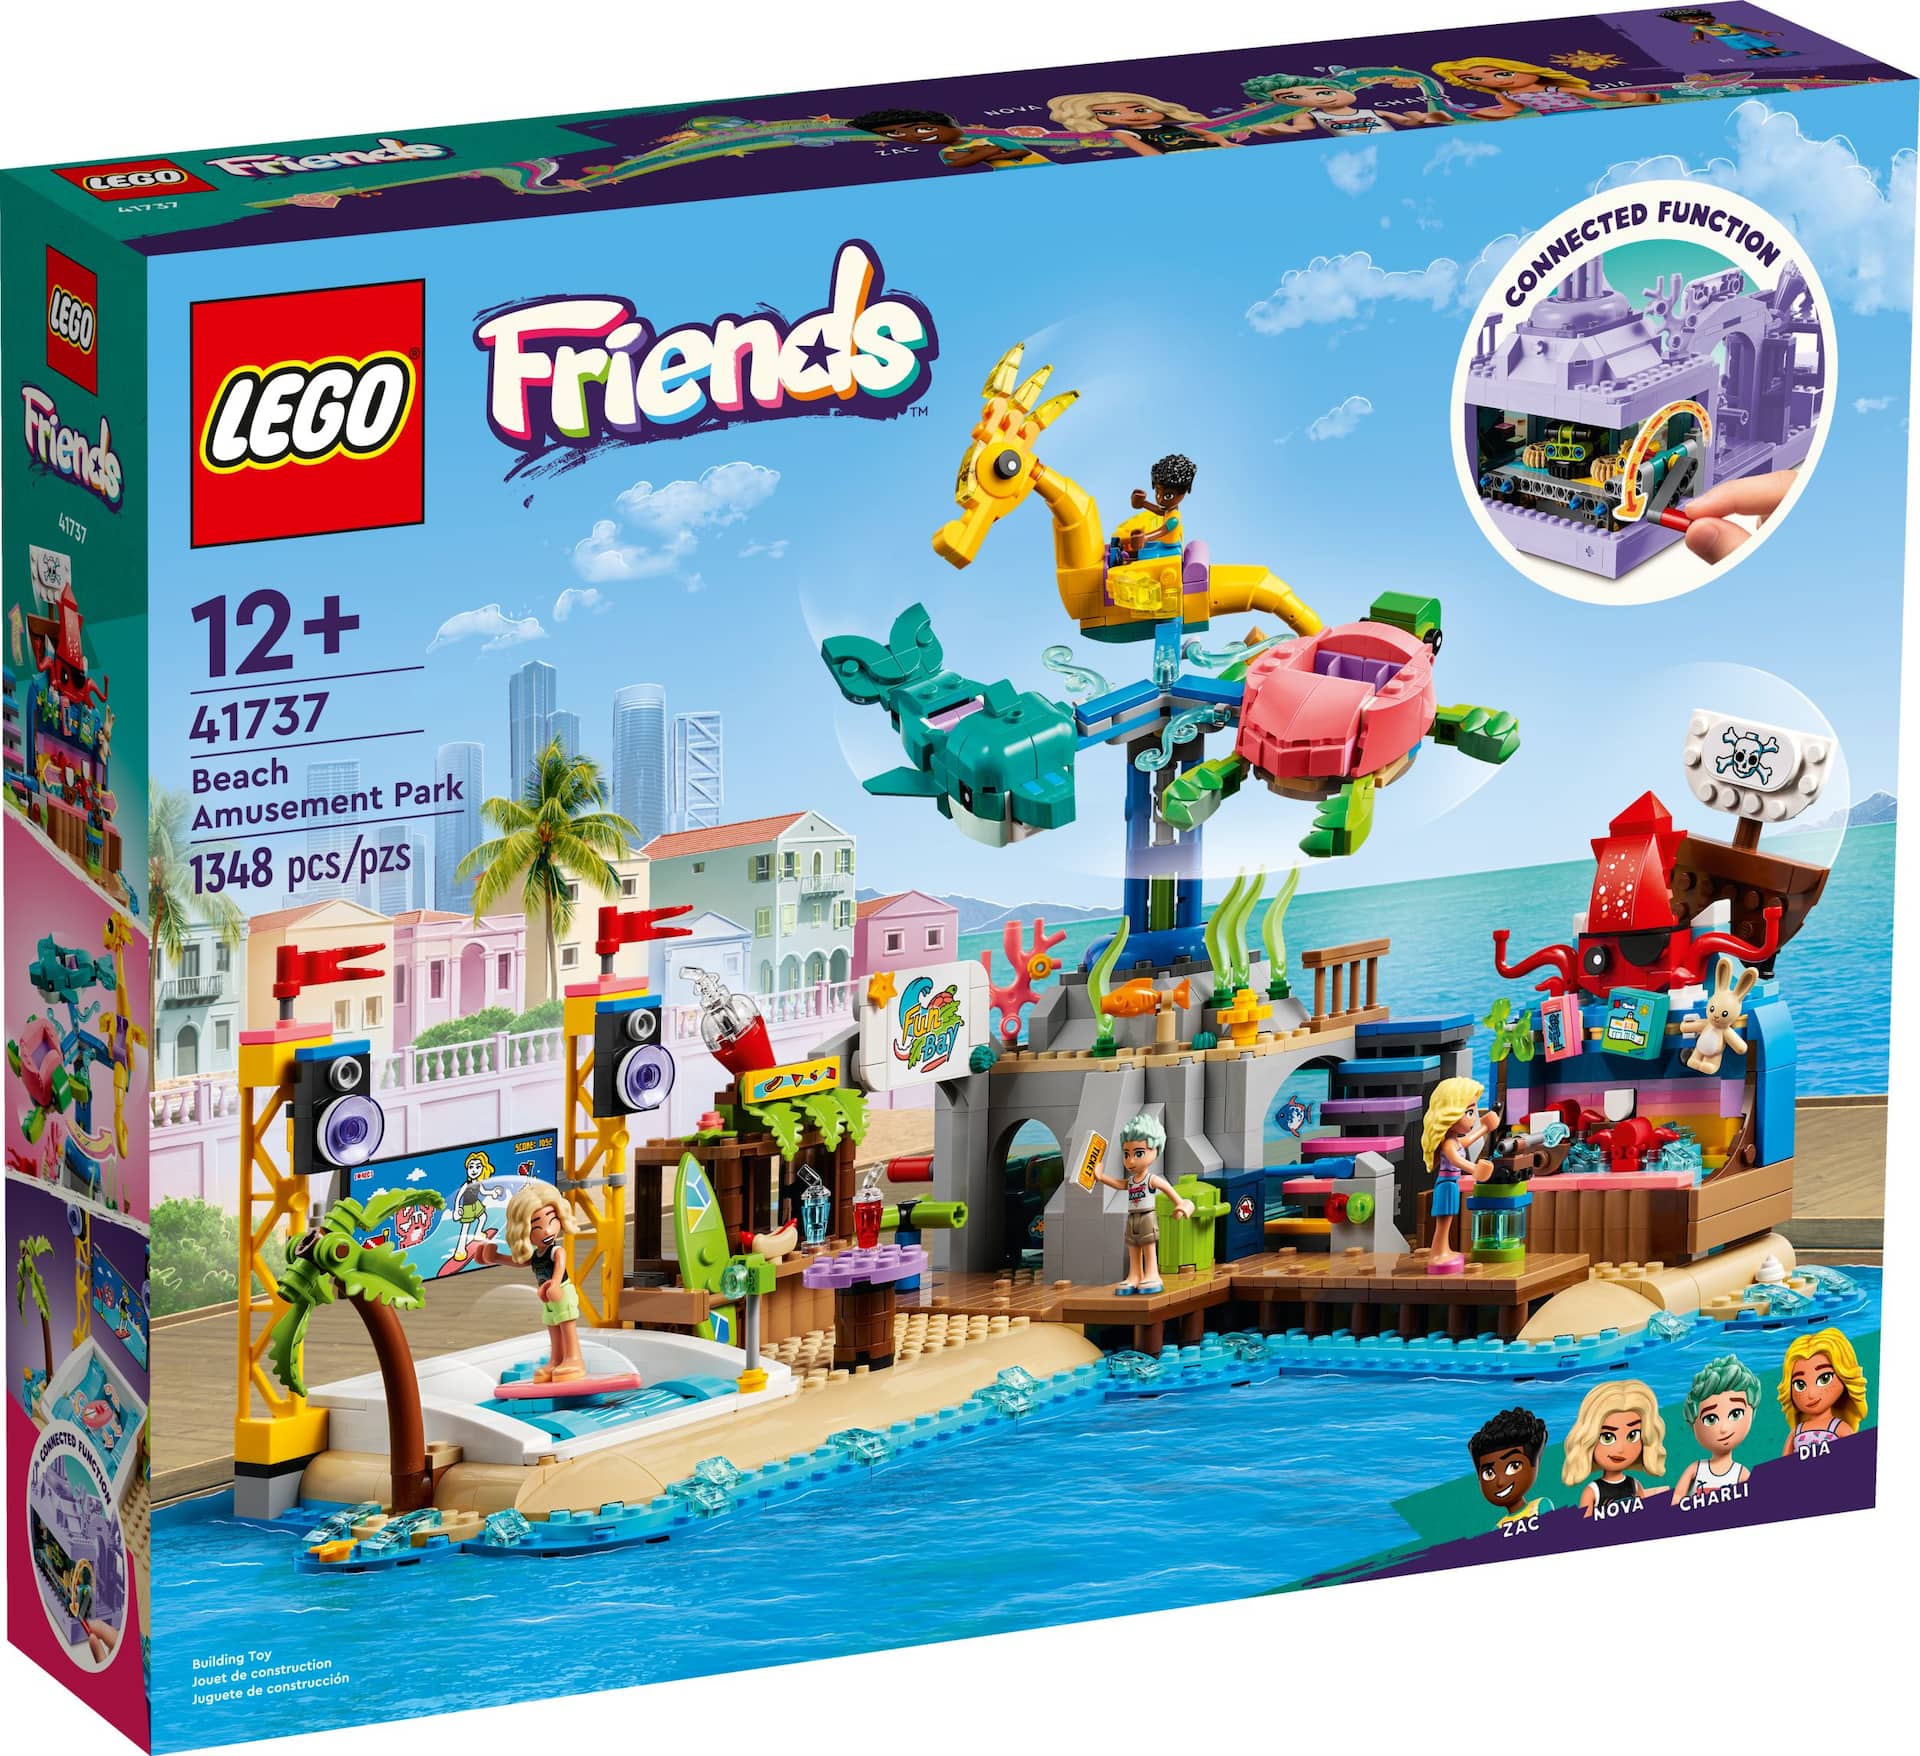 LEGO® Friends Beach Amusement Park Building Set, Ages 12+